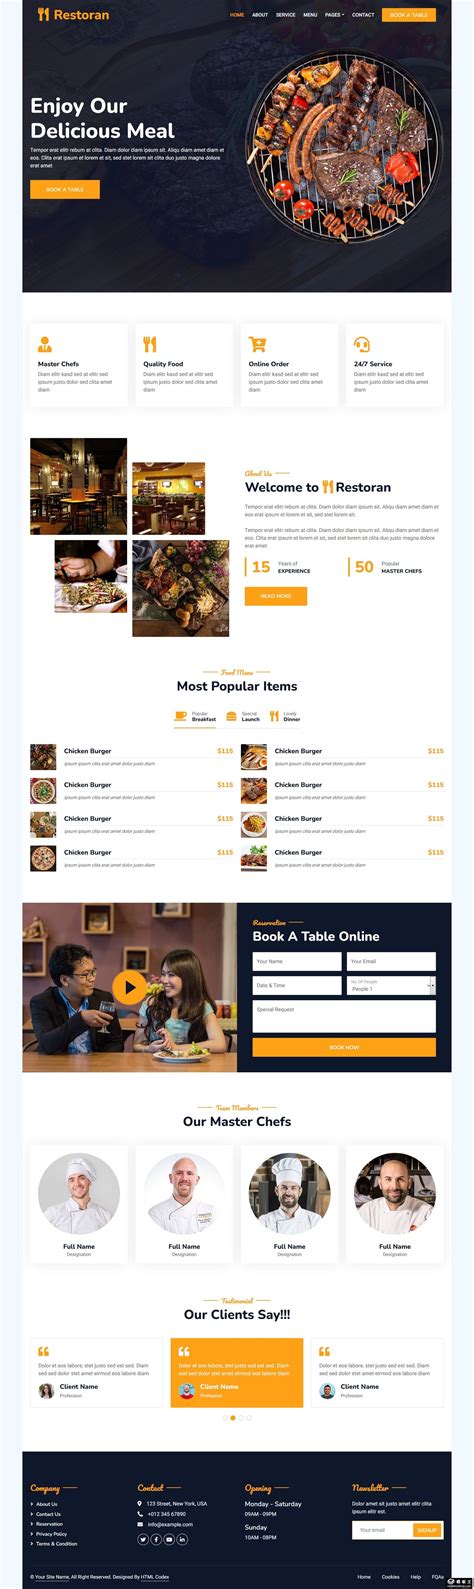 西餐美食网页模板设计 - 爱图网